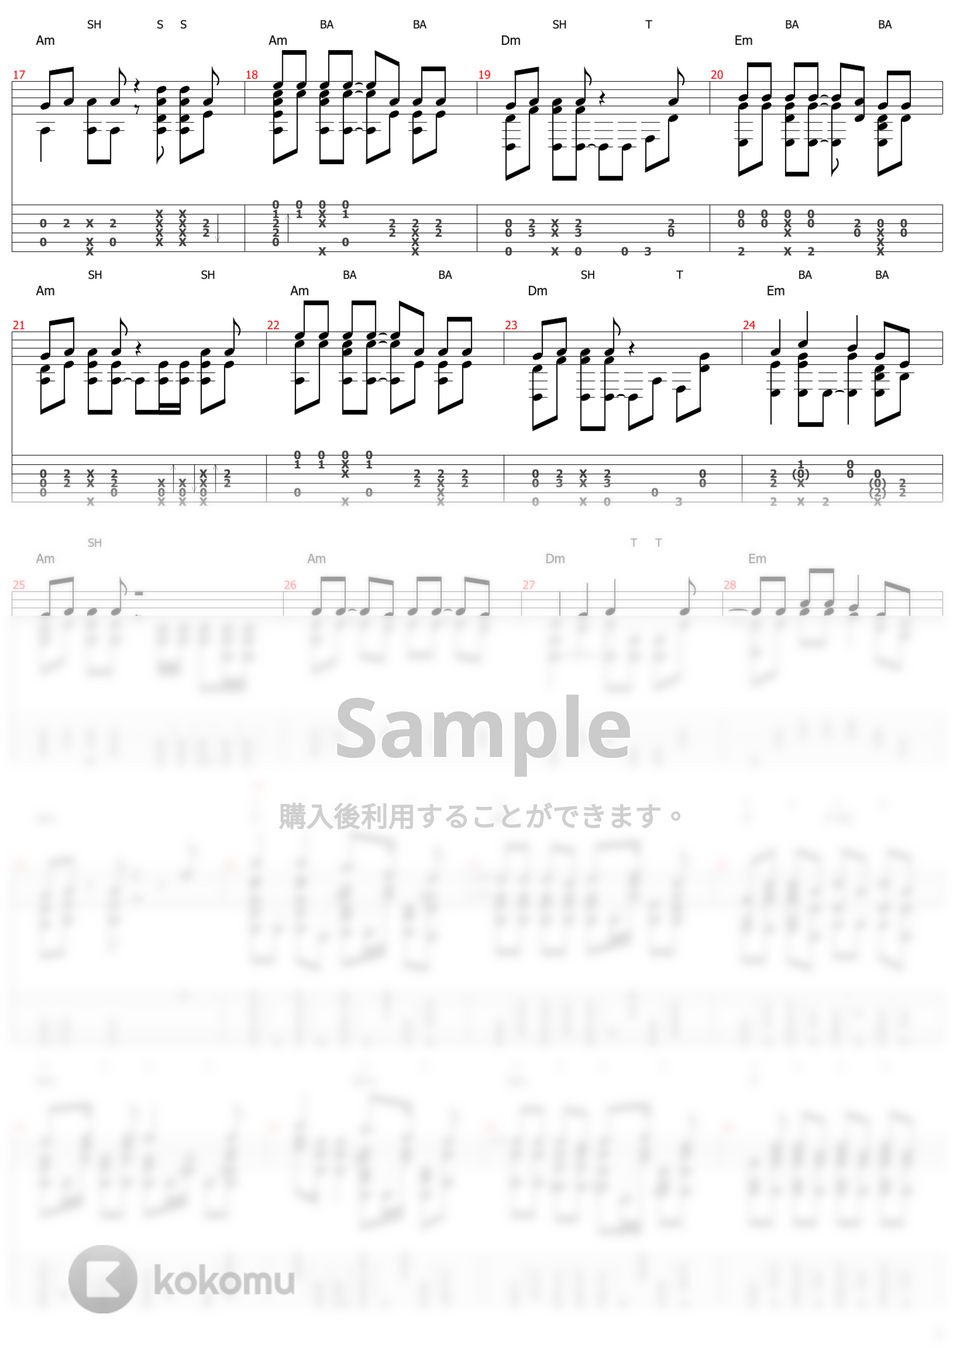 すりぃ - テレキャスタービーボーイ (ソロギター) by おさむらいさん